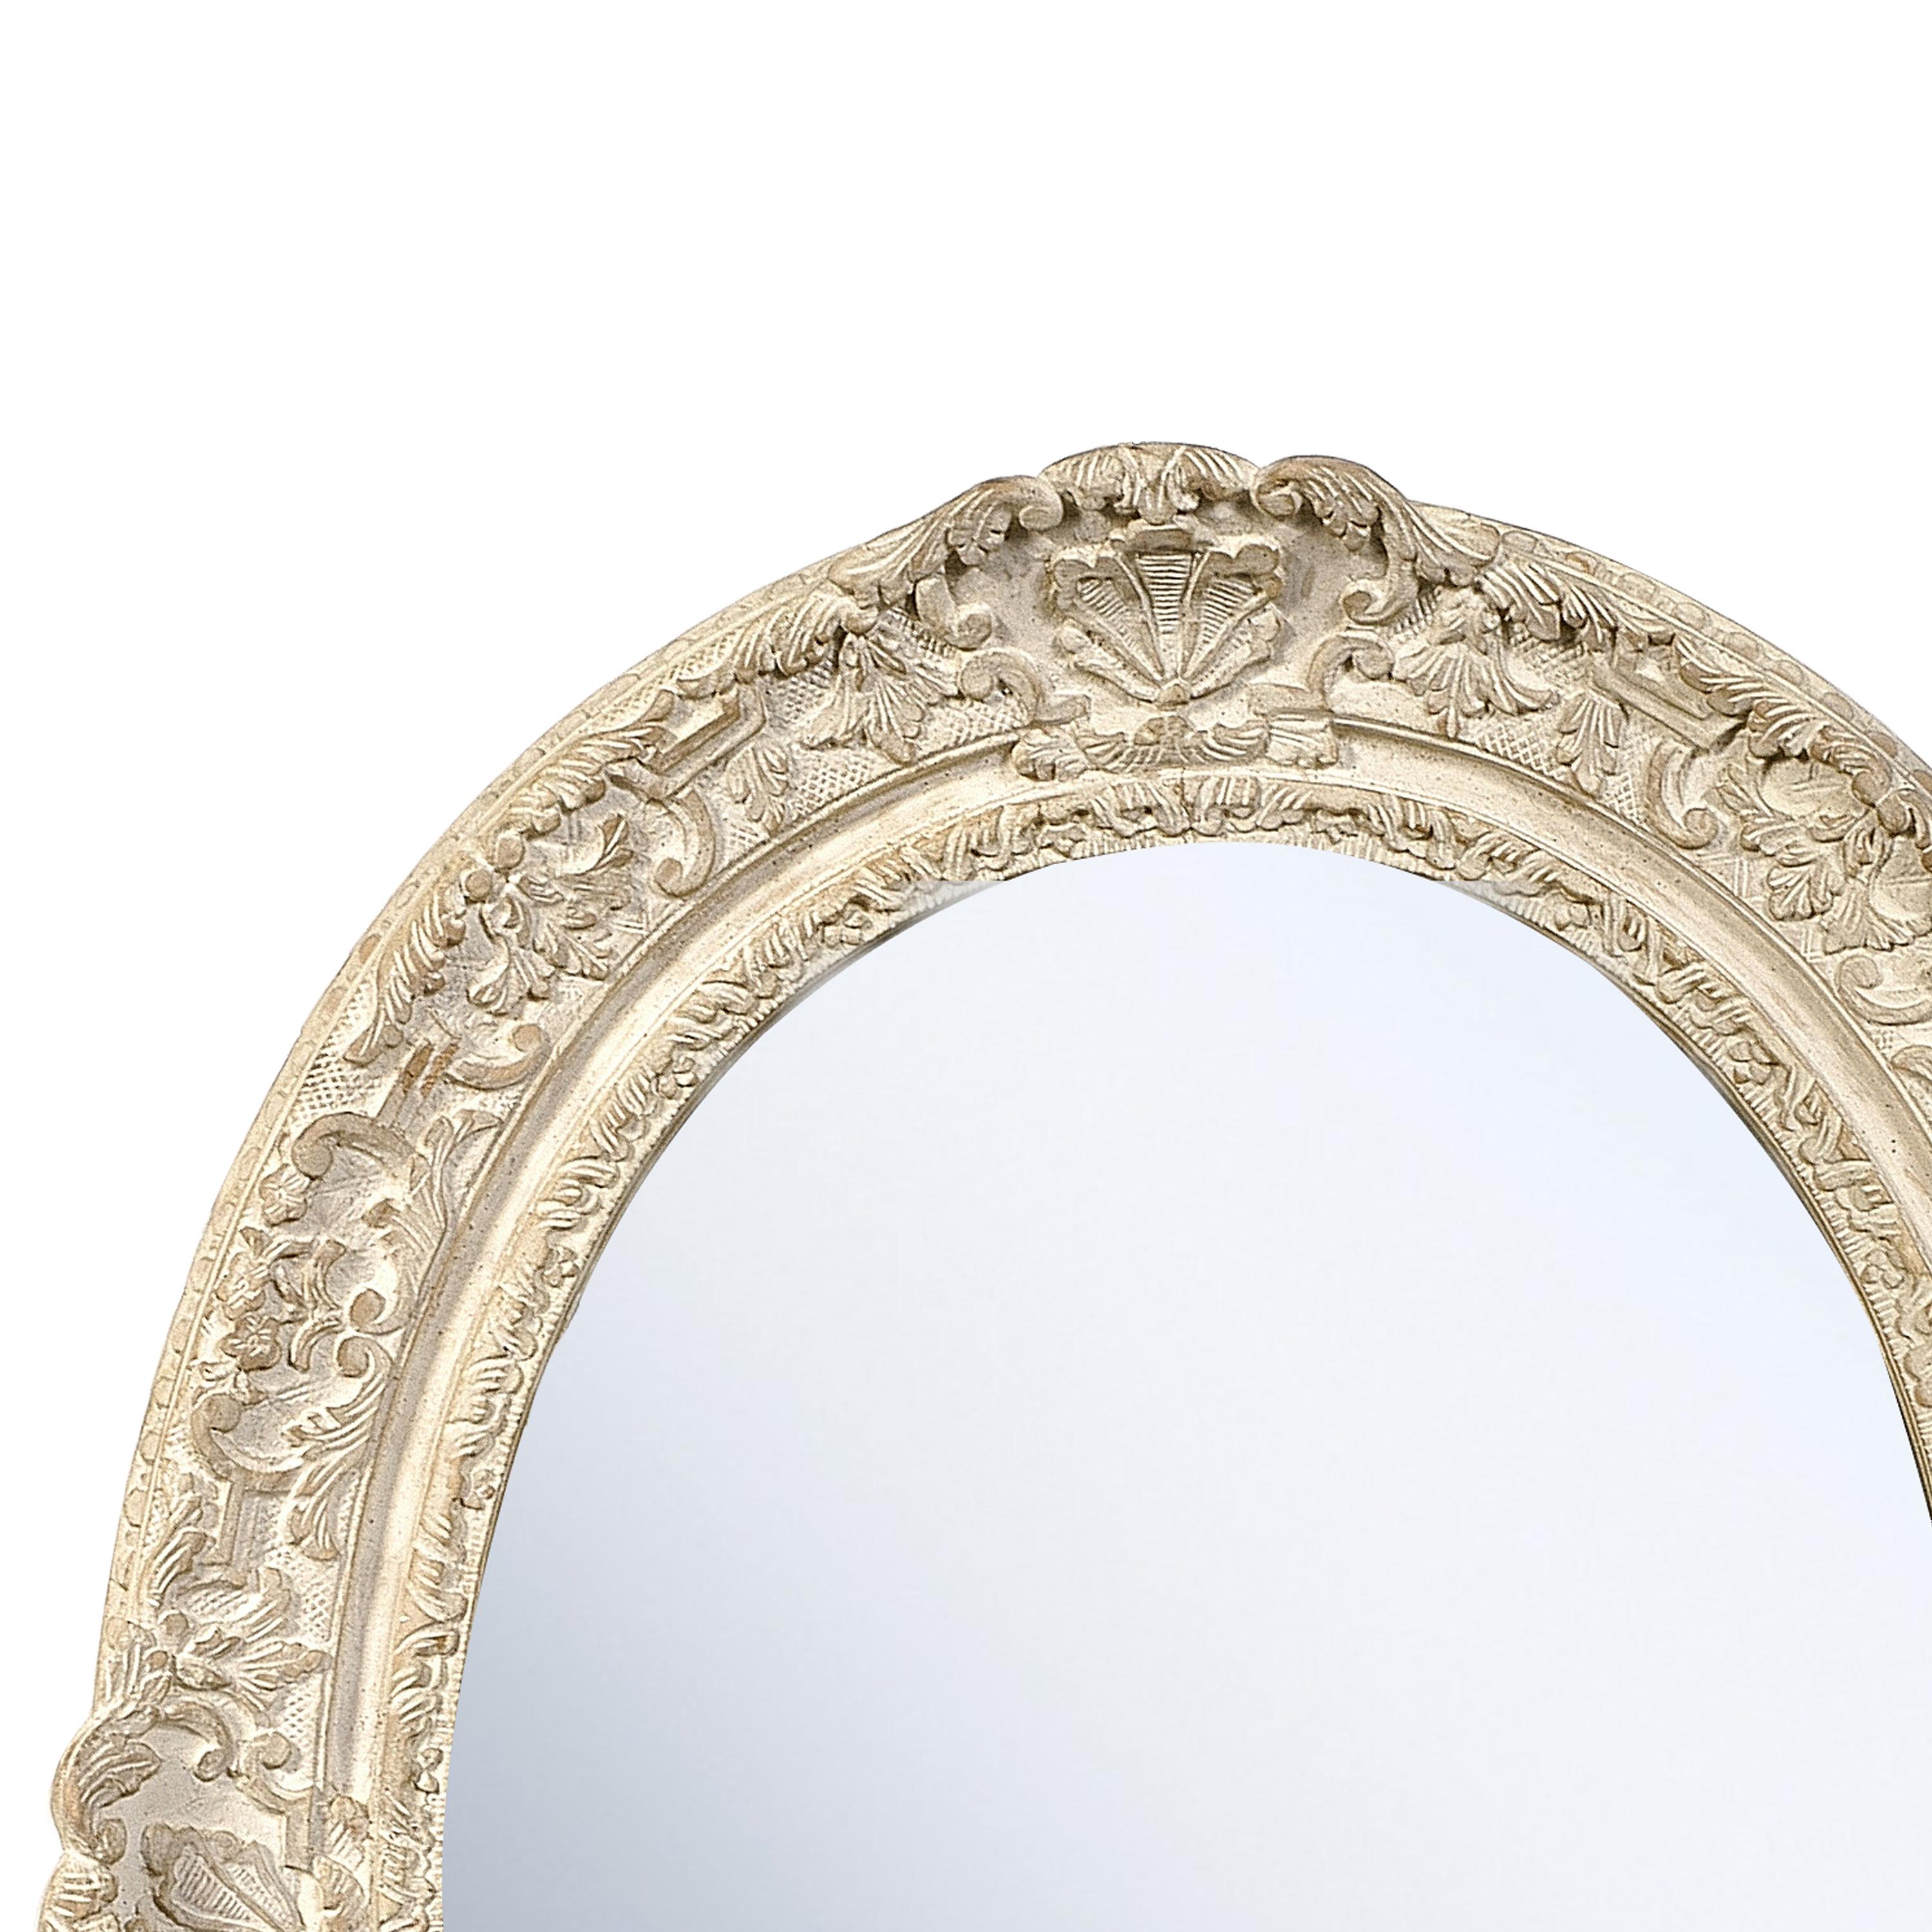 Miroir artisanal de style néoclassique Empire. Structure en bois sculpté à la main de forme ovale avec une finition en feuille d'argent.
  